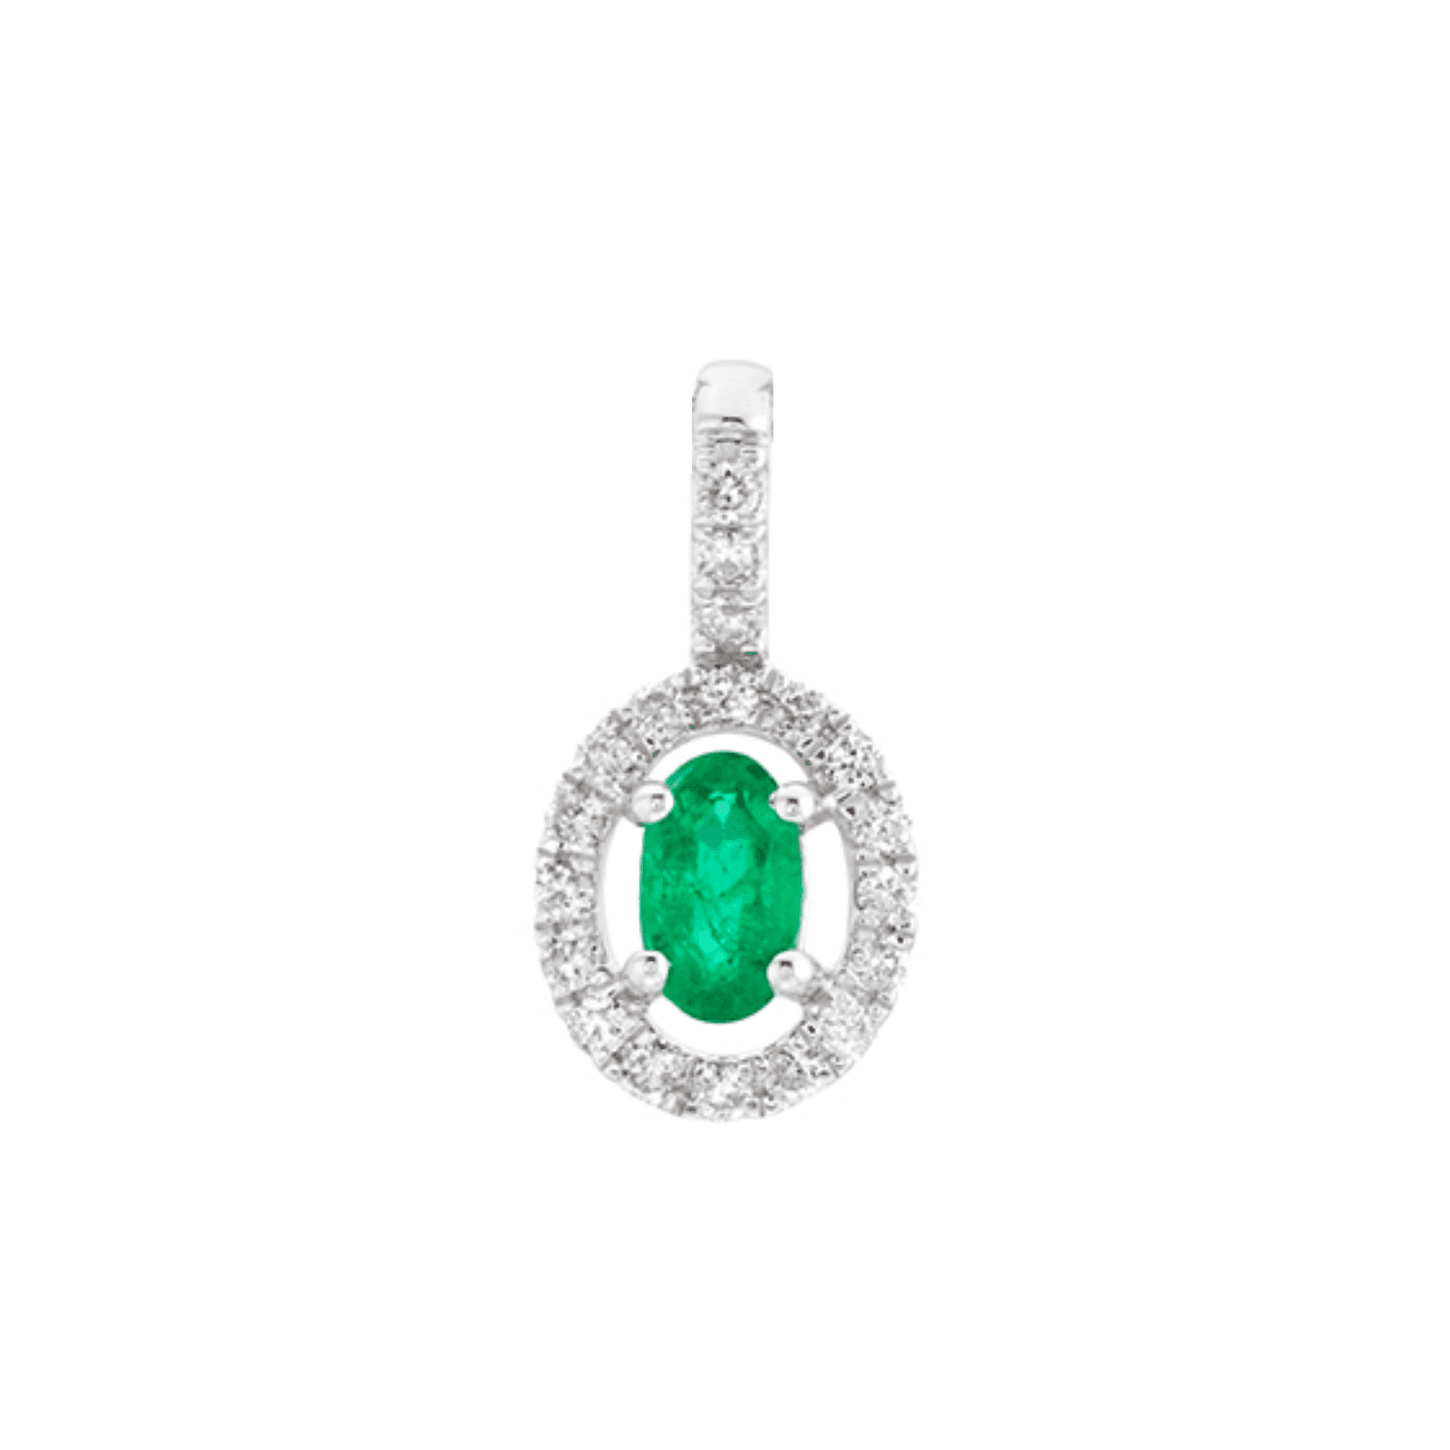 Emerald & Diamond Pendant Necklace 0